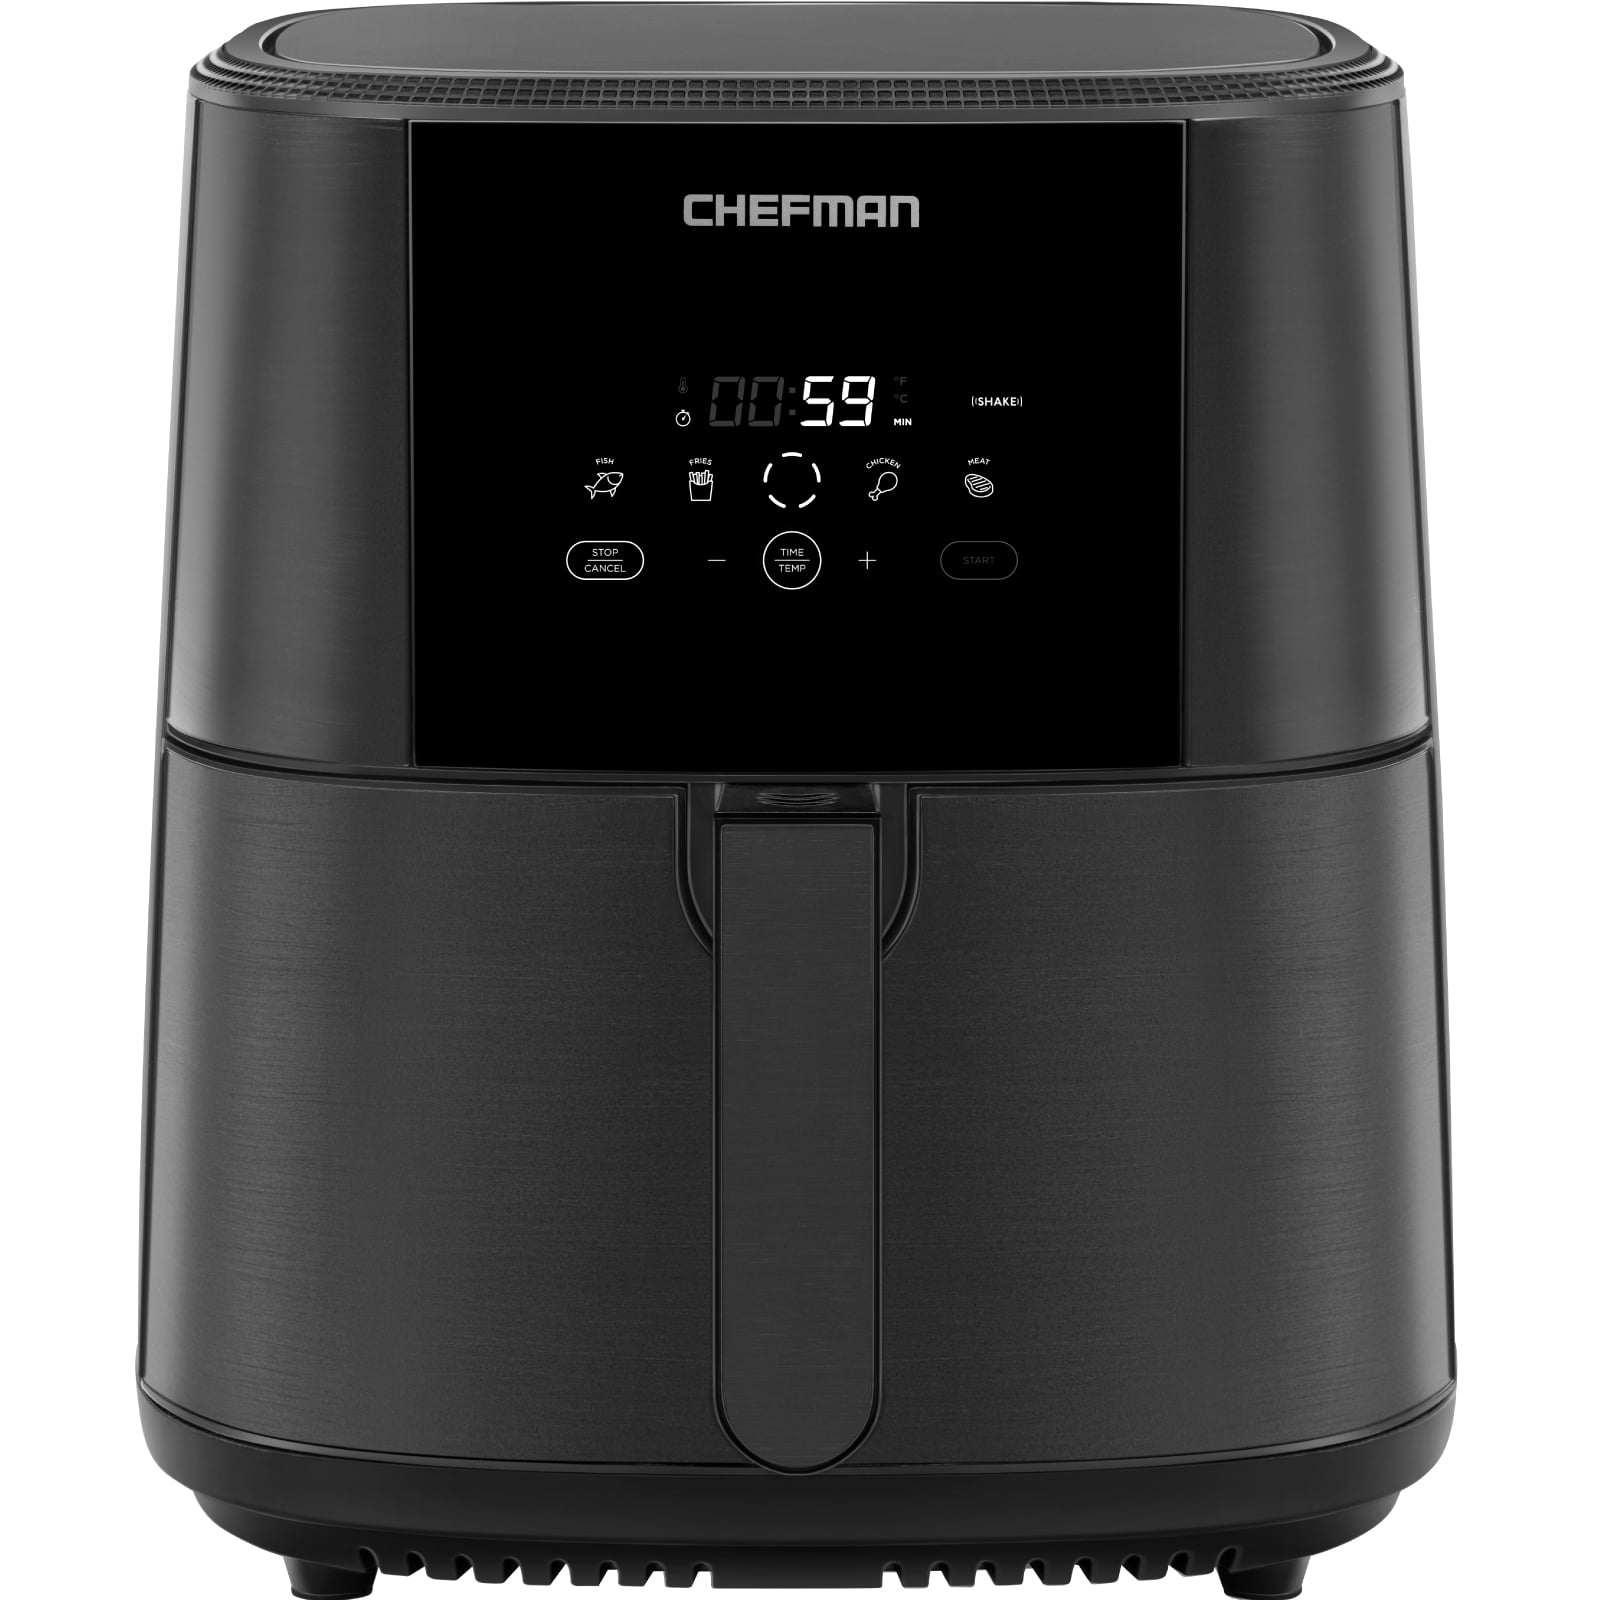 Chefman Turbo Fry XL 5 Quart Air Fryer Digital One Touch Control